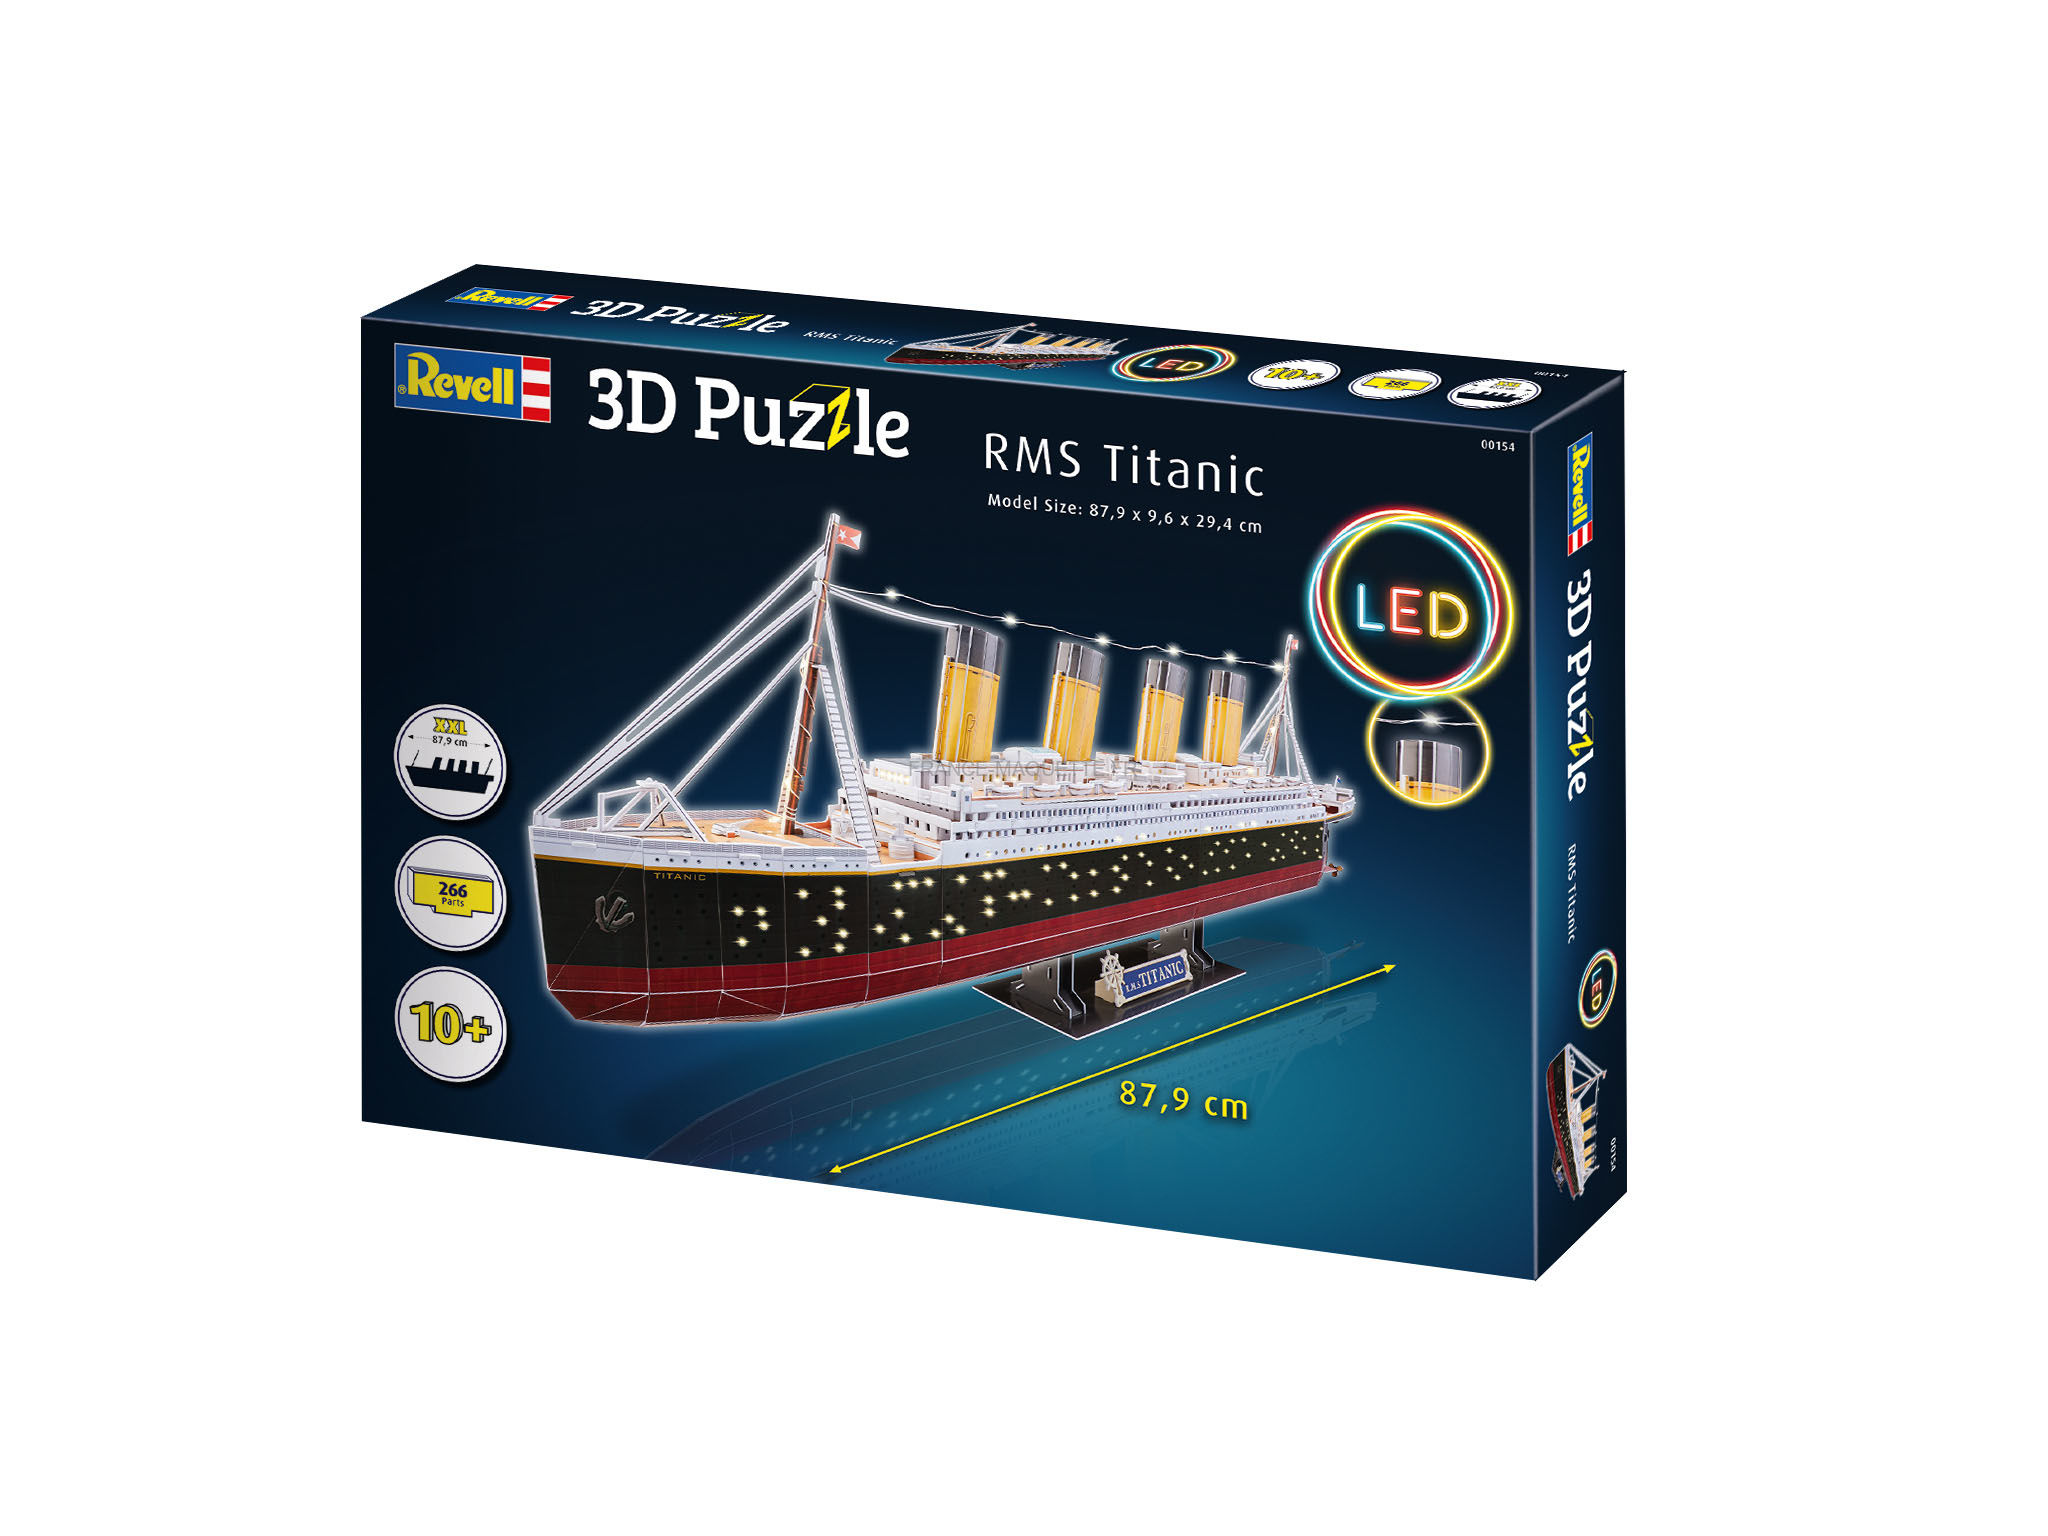 Revell 0154, 154 - Puzzle 3D Rms Titanic Led